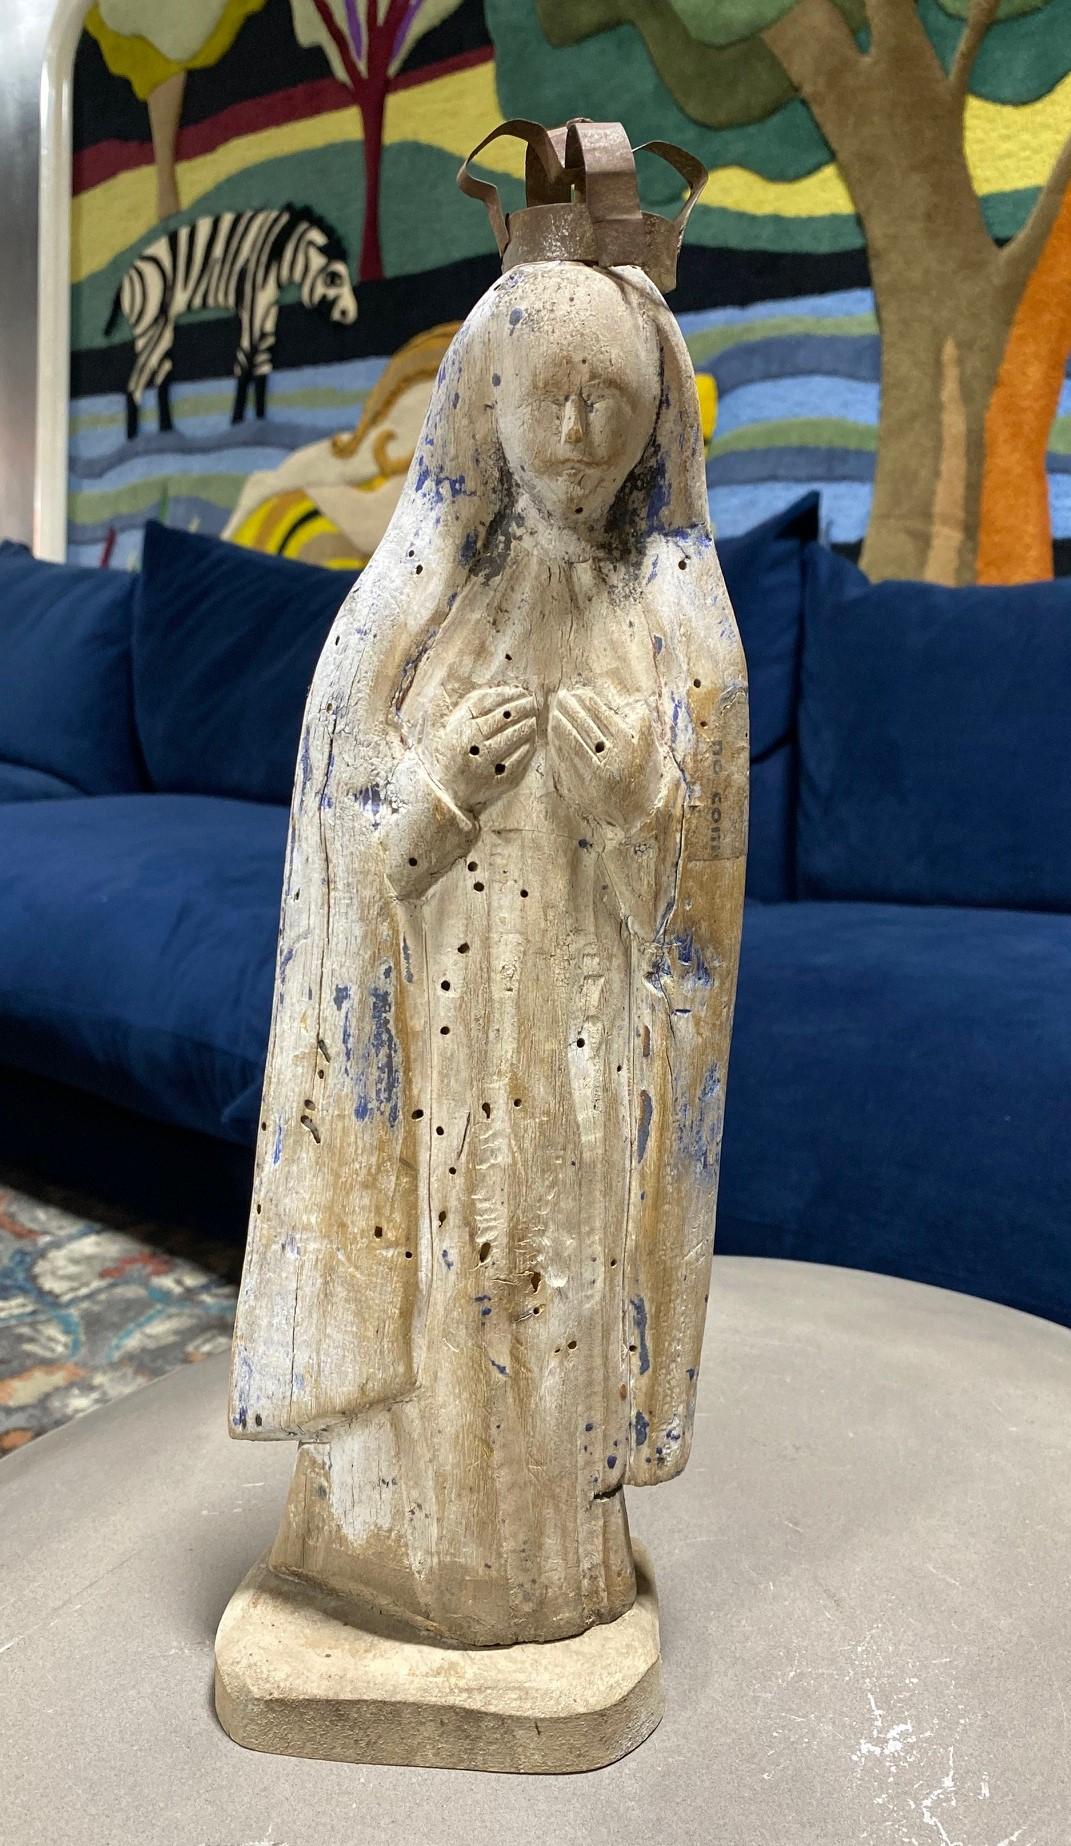 Un beau Santo en bois sculpté à la main de la Madone, Marie mère du Christ. 

Cette pièce montre clairement des signes d'altération, d'utilisation et d'âge et a probablement été placée à l'extérieur d'une église ou d'un sanctuaire pendant quelques